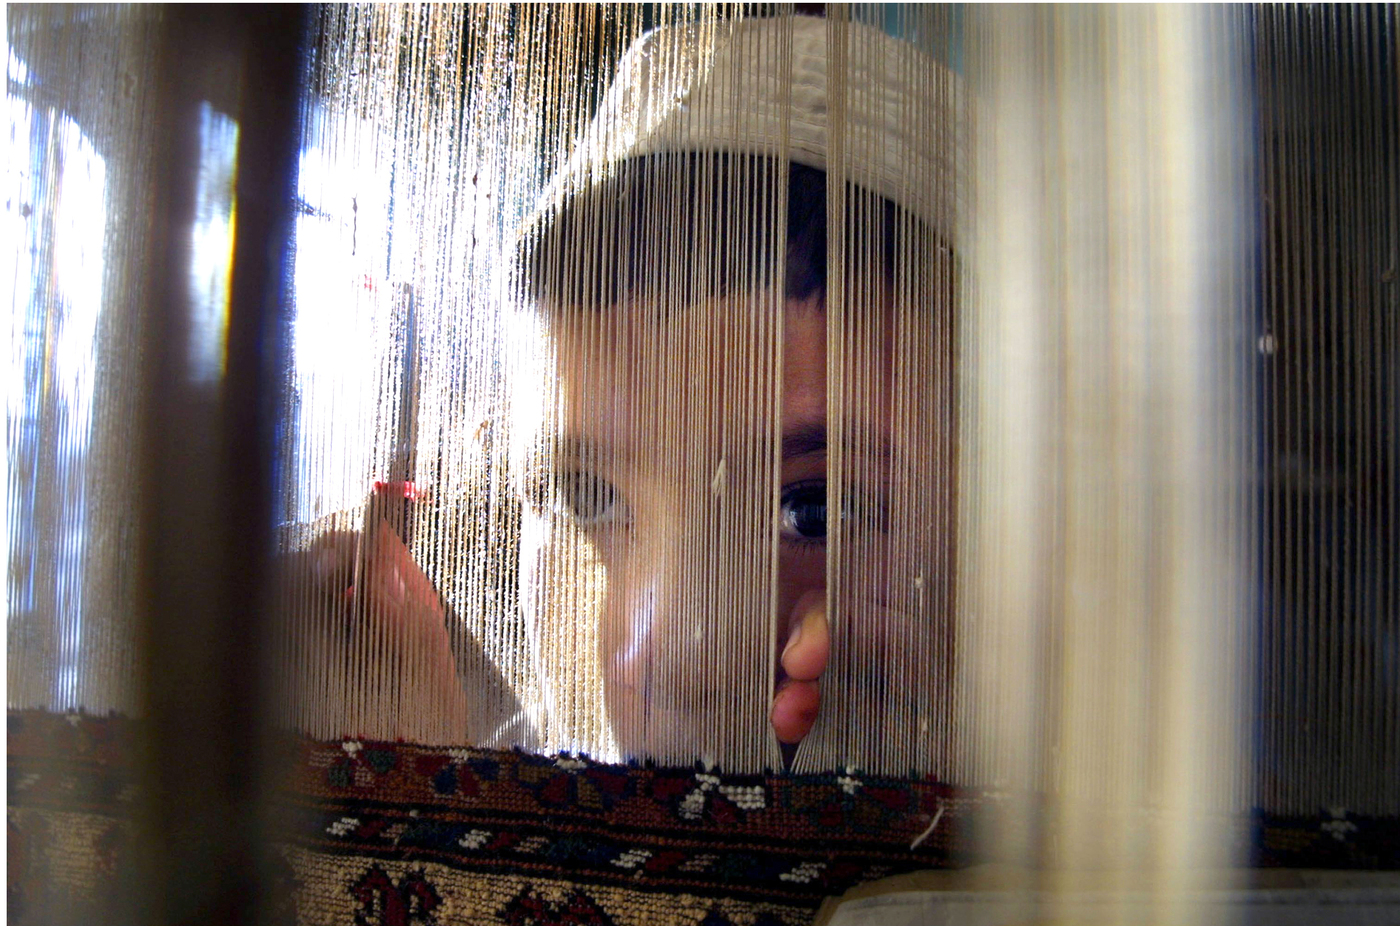 ©LAPRESSE
27-12-01  KABUL
ESTERO
LAVORO MINORILE  IN AFGHANISTAN
NELLA FOTO: UN BAMBINO CHE LAVORA NELLA FABBRICA SHARIFI DI TAPPETI